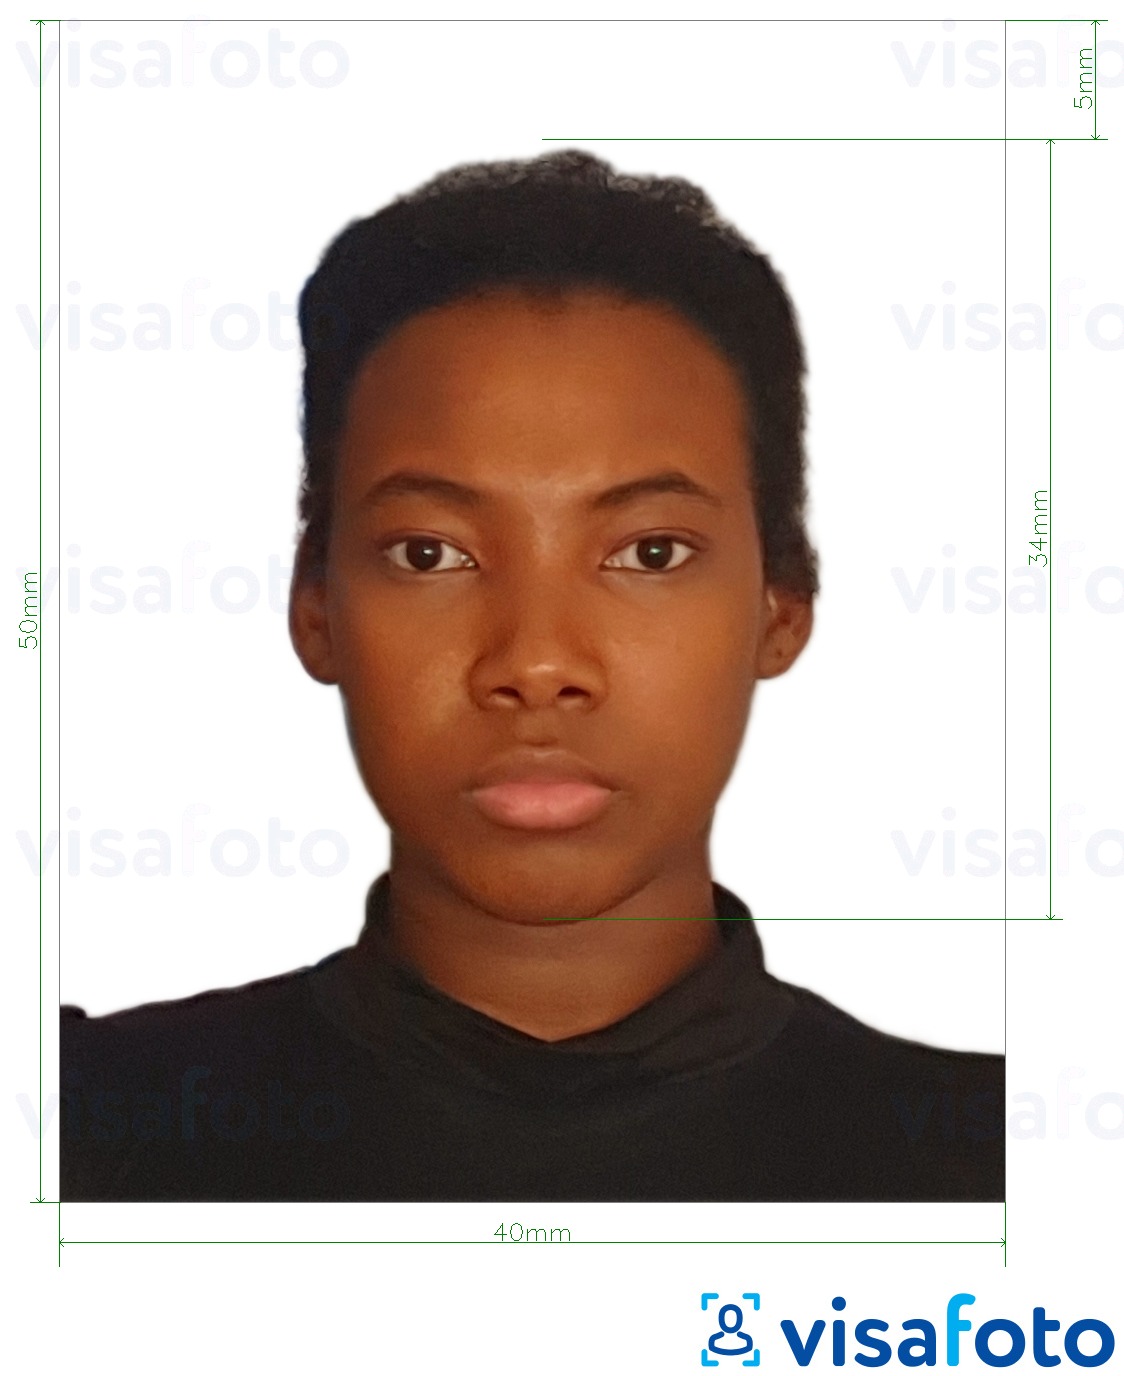 Voorbeeld van foto voor Kameroen paspoort 4x5 cm (40x50 mm) met exacte maatspecificatie